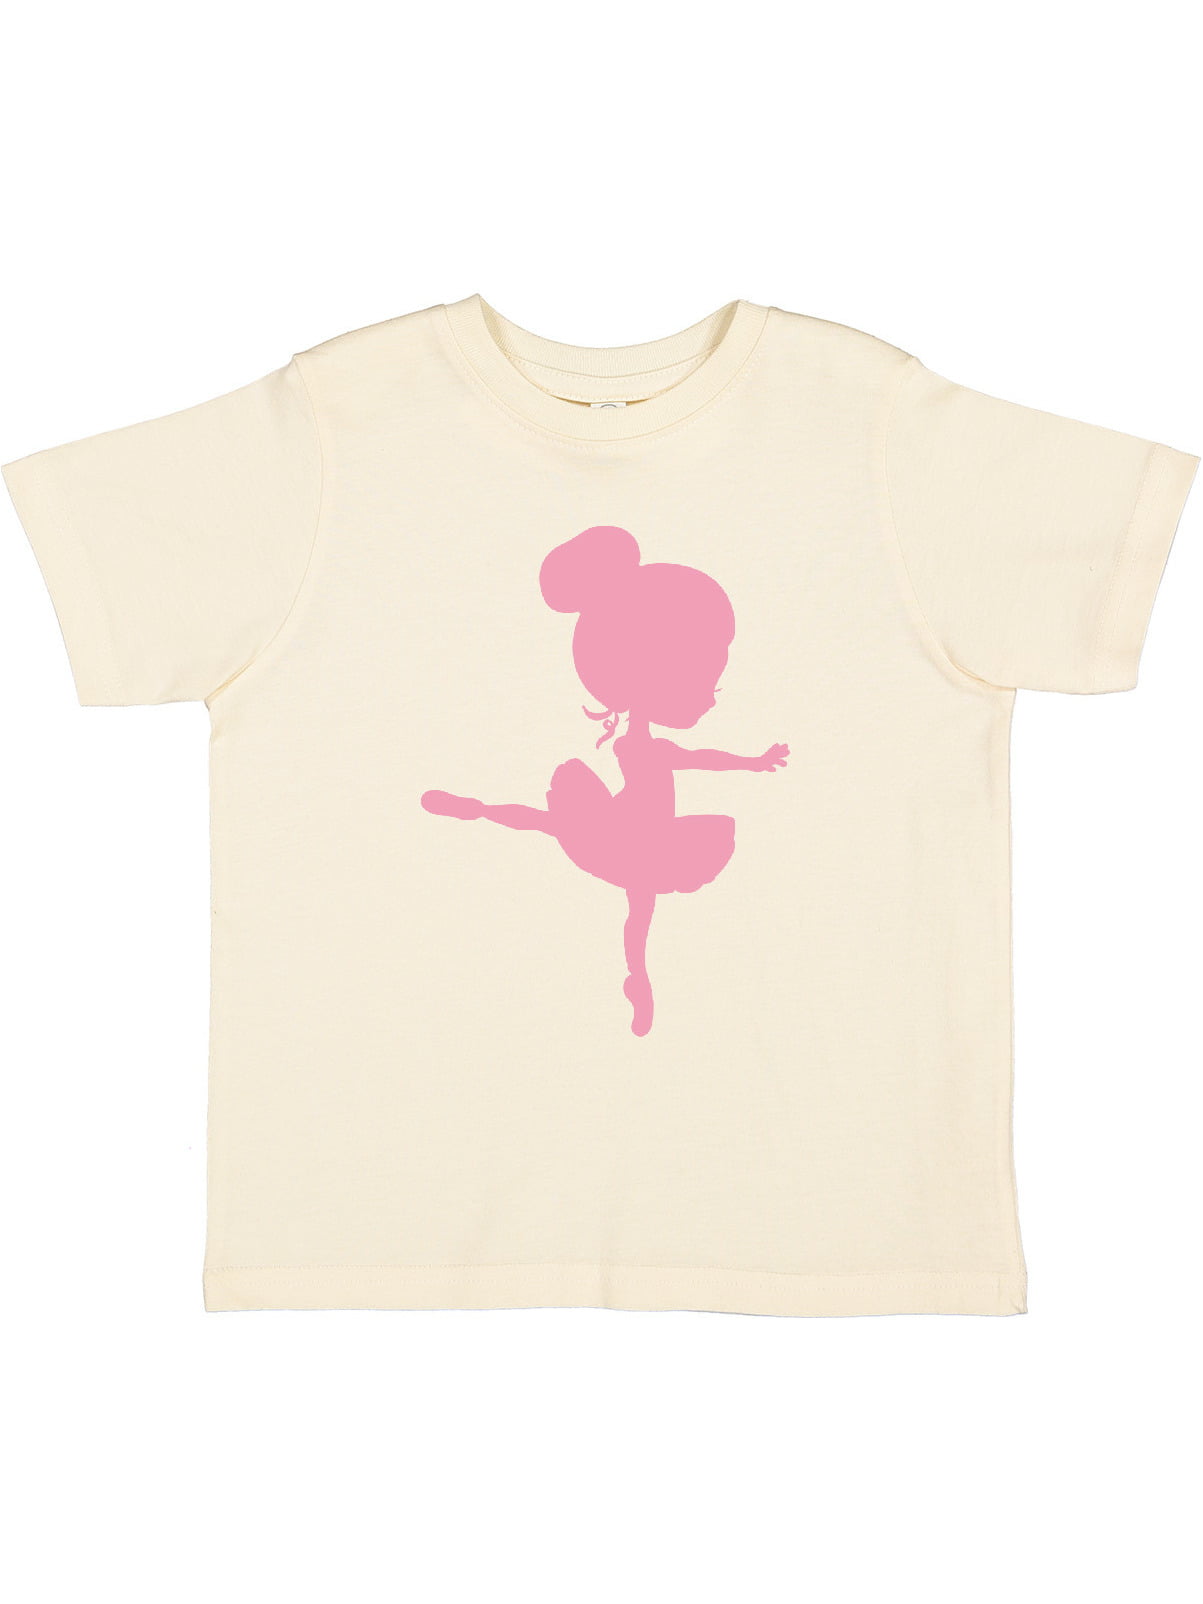 En Pointe T-Shirt Dance Shirt Ballet Gifts Ballet Shirt Ballerina Shirt